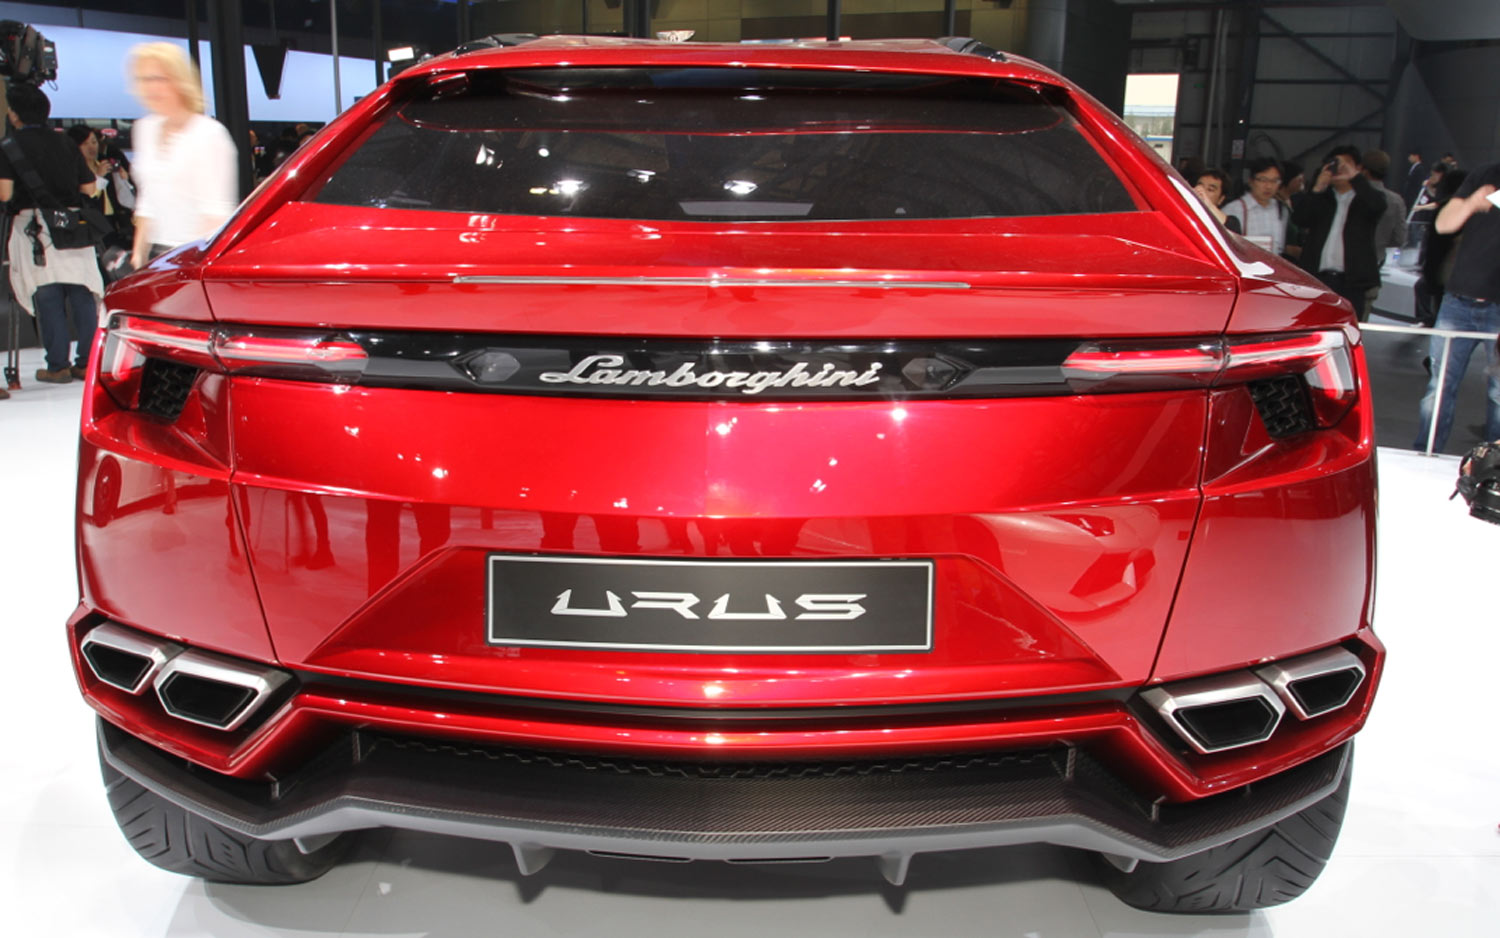 Lamborghini Urus Backgrounds, Compatible - PC, Mobile, Gadgets| 1500x938 px